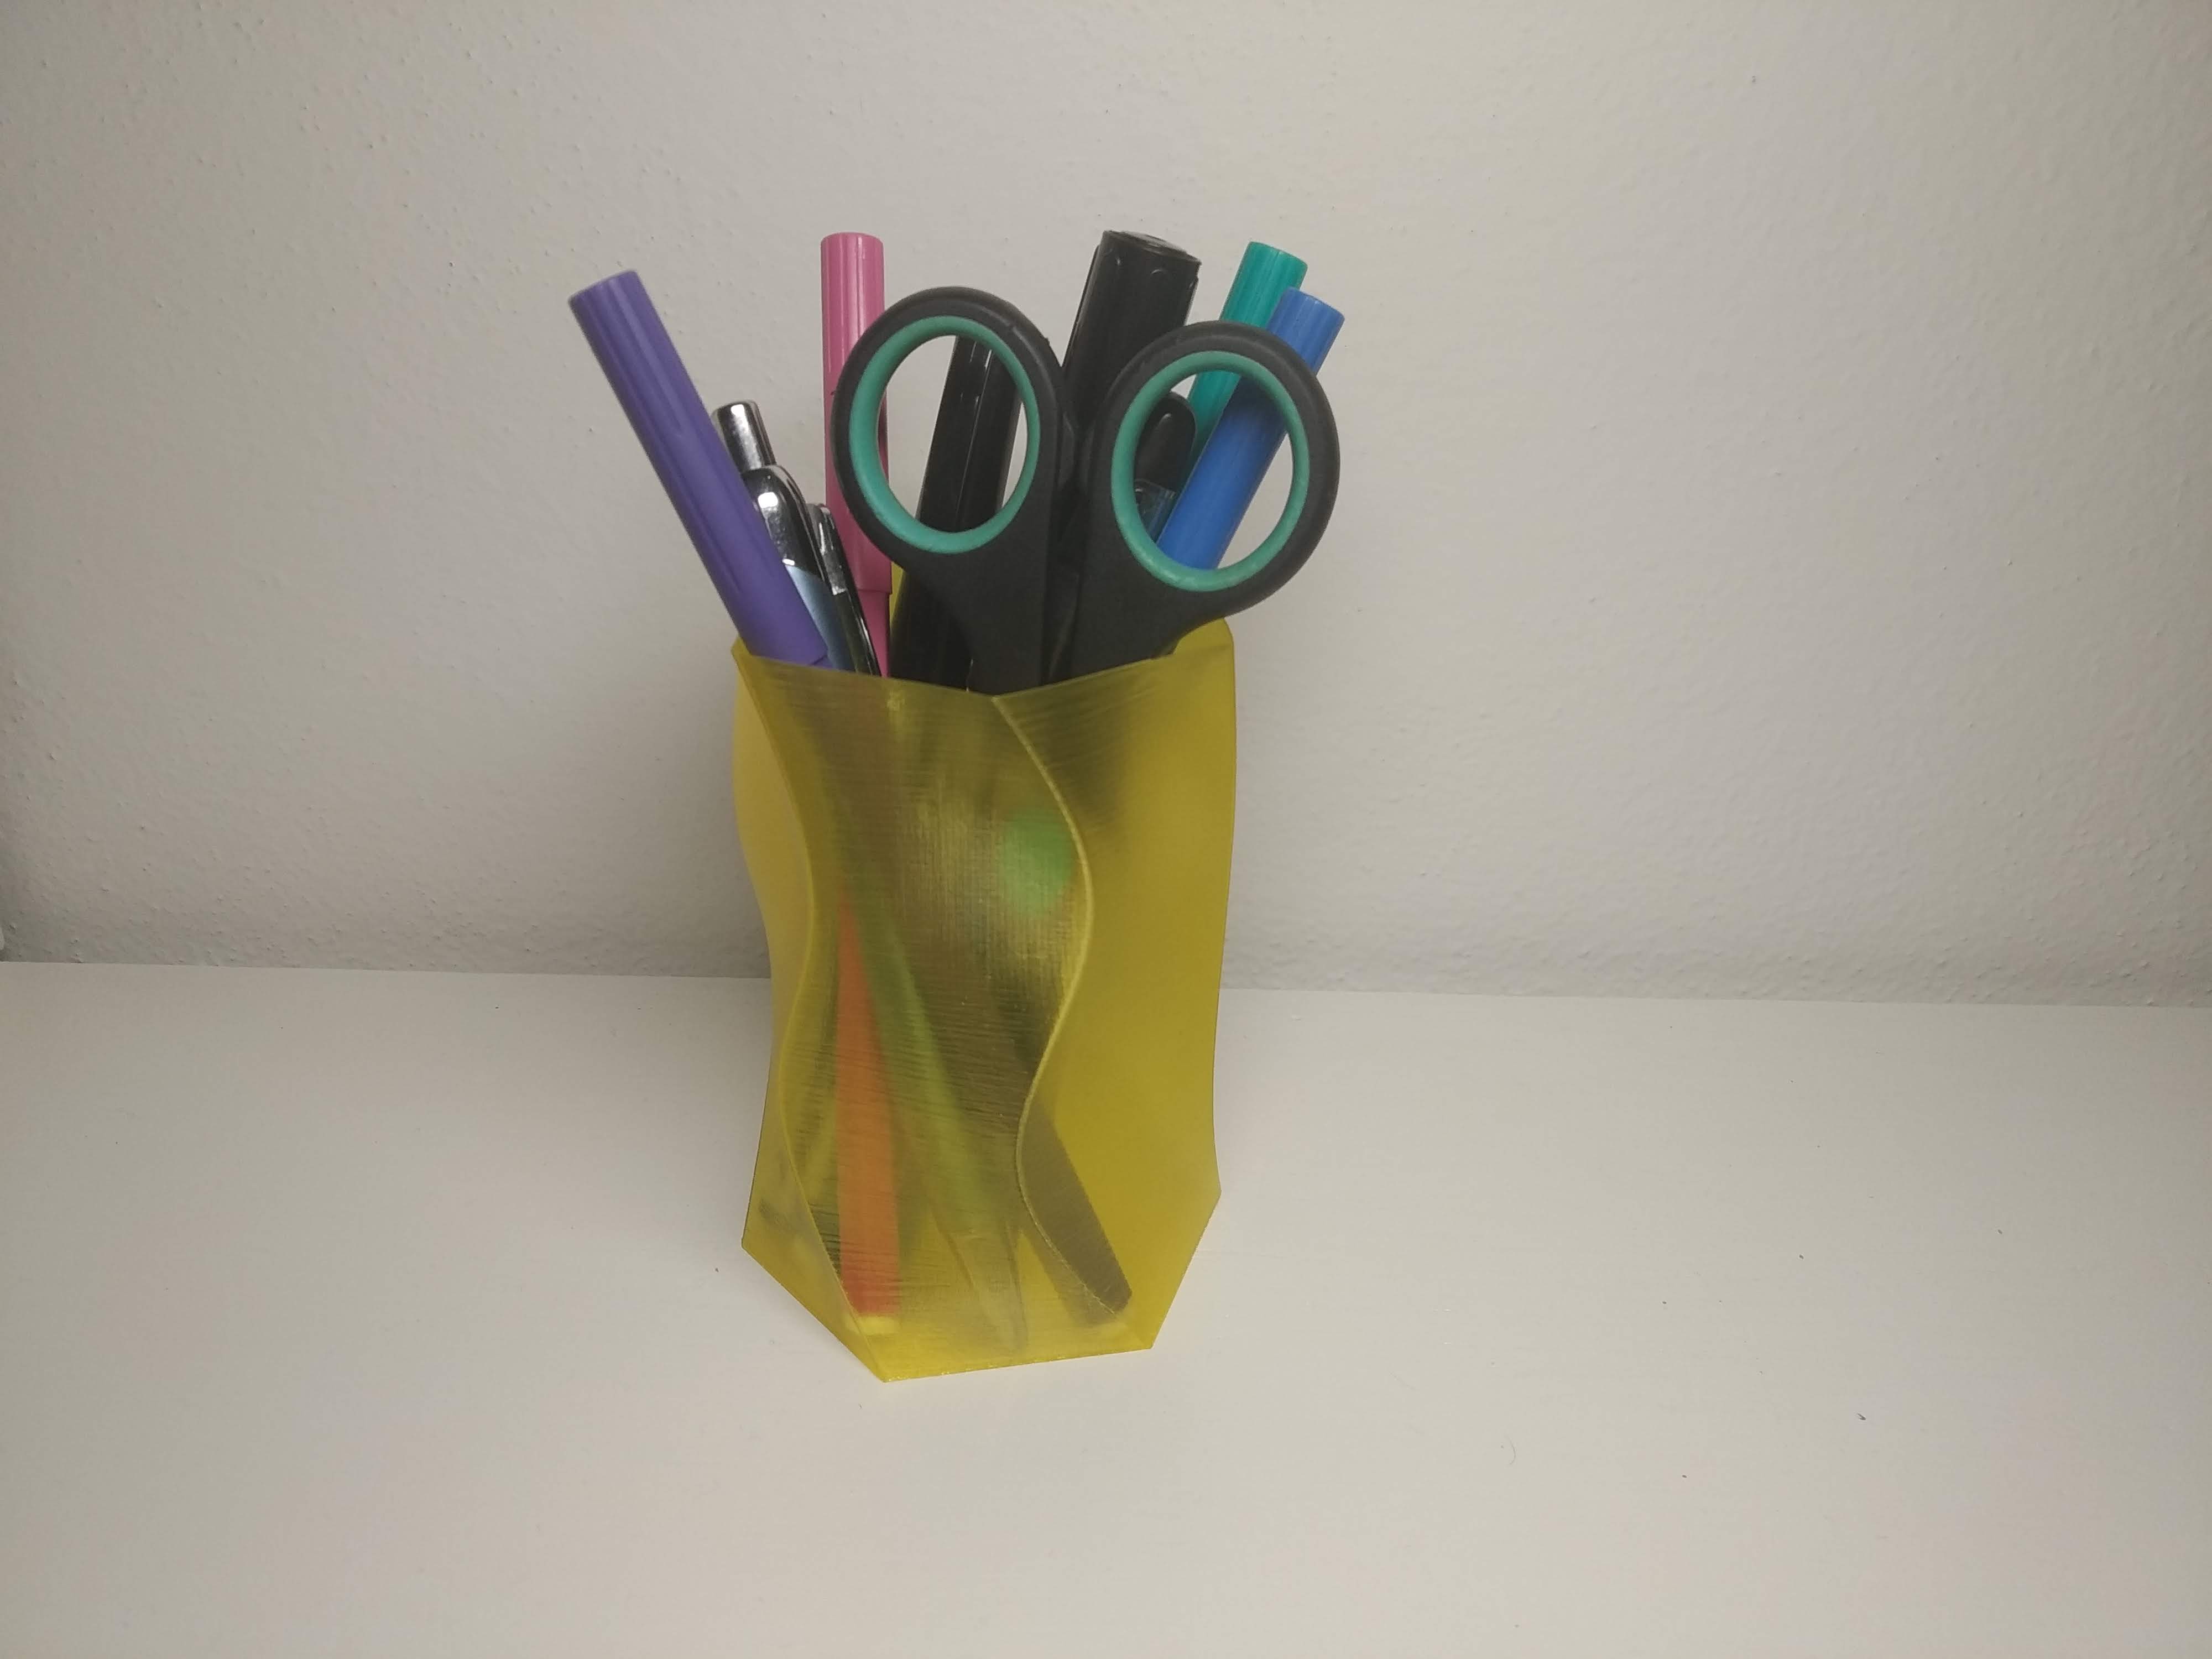 Twisted hex vase, pen holder and flower pot